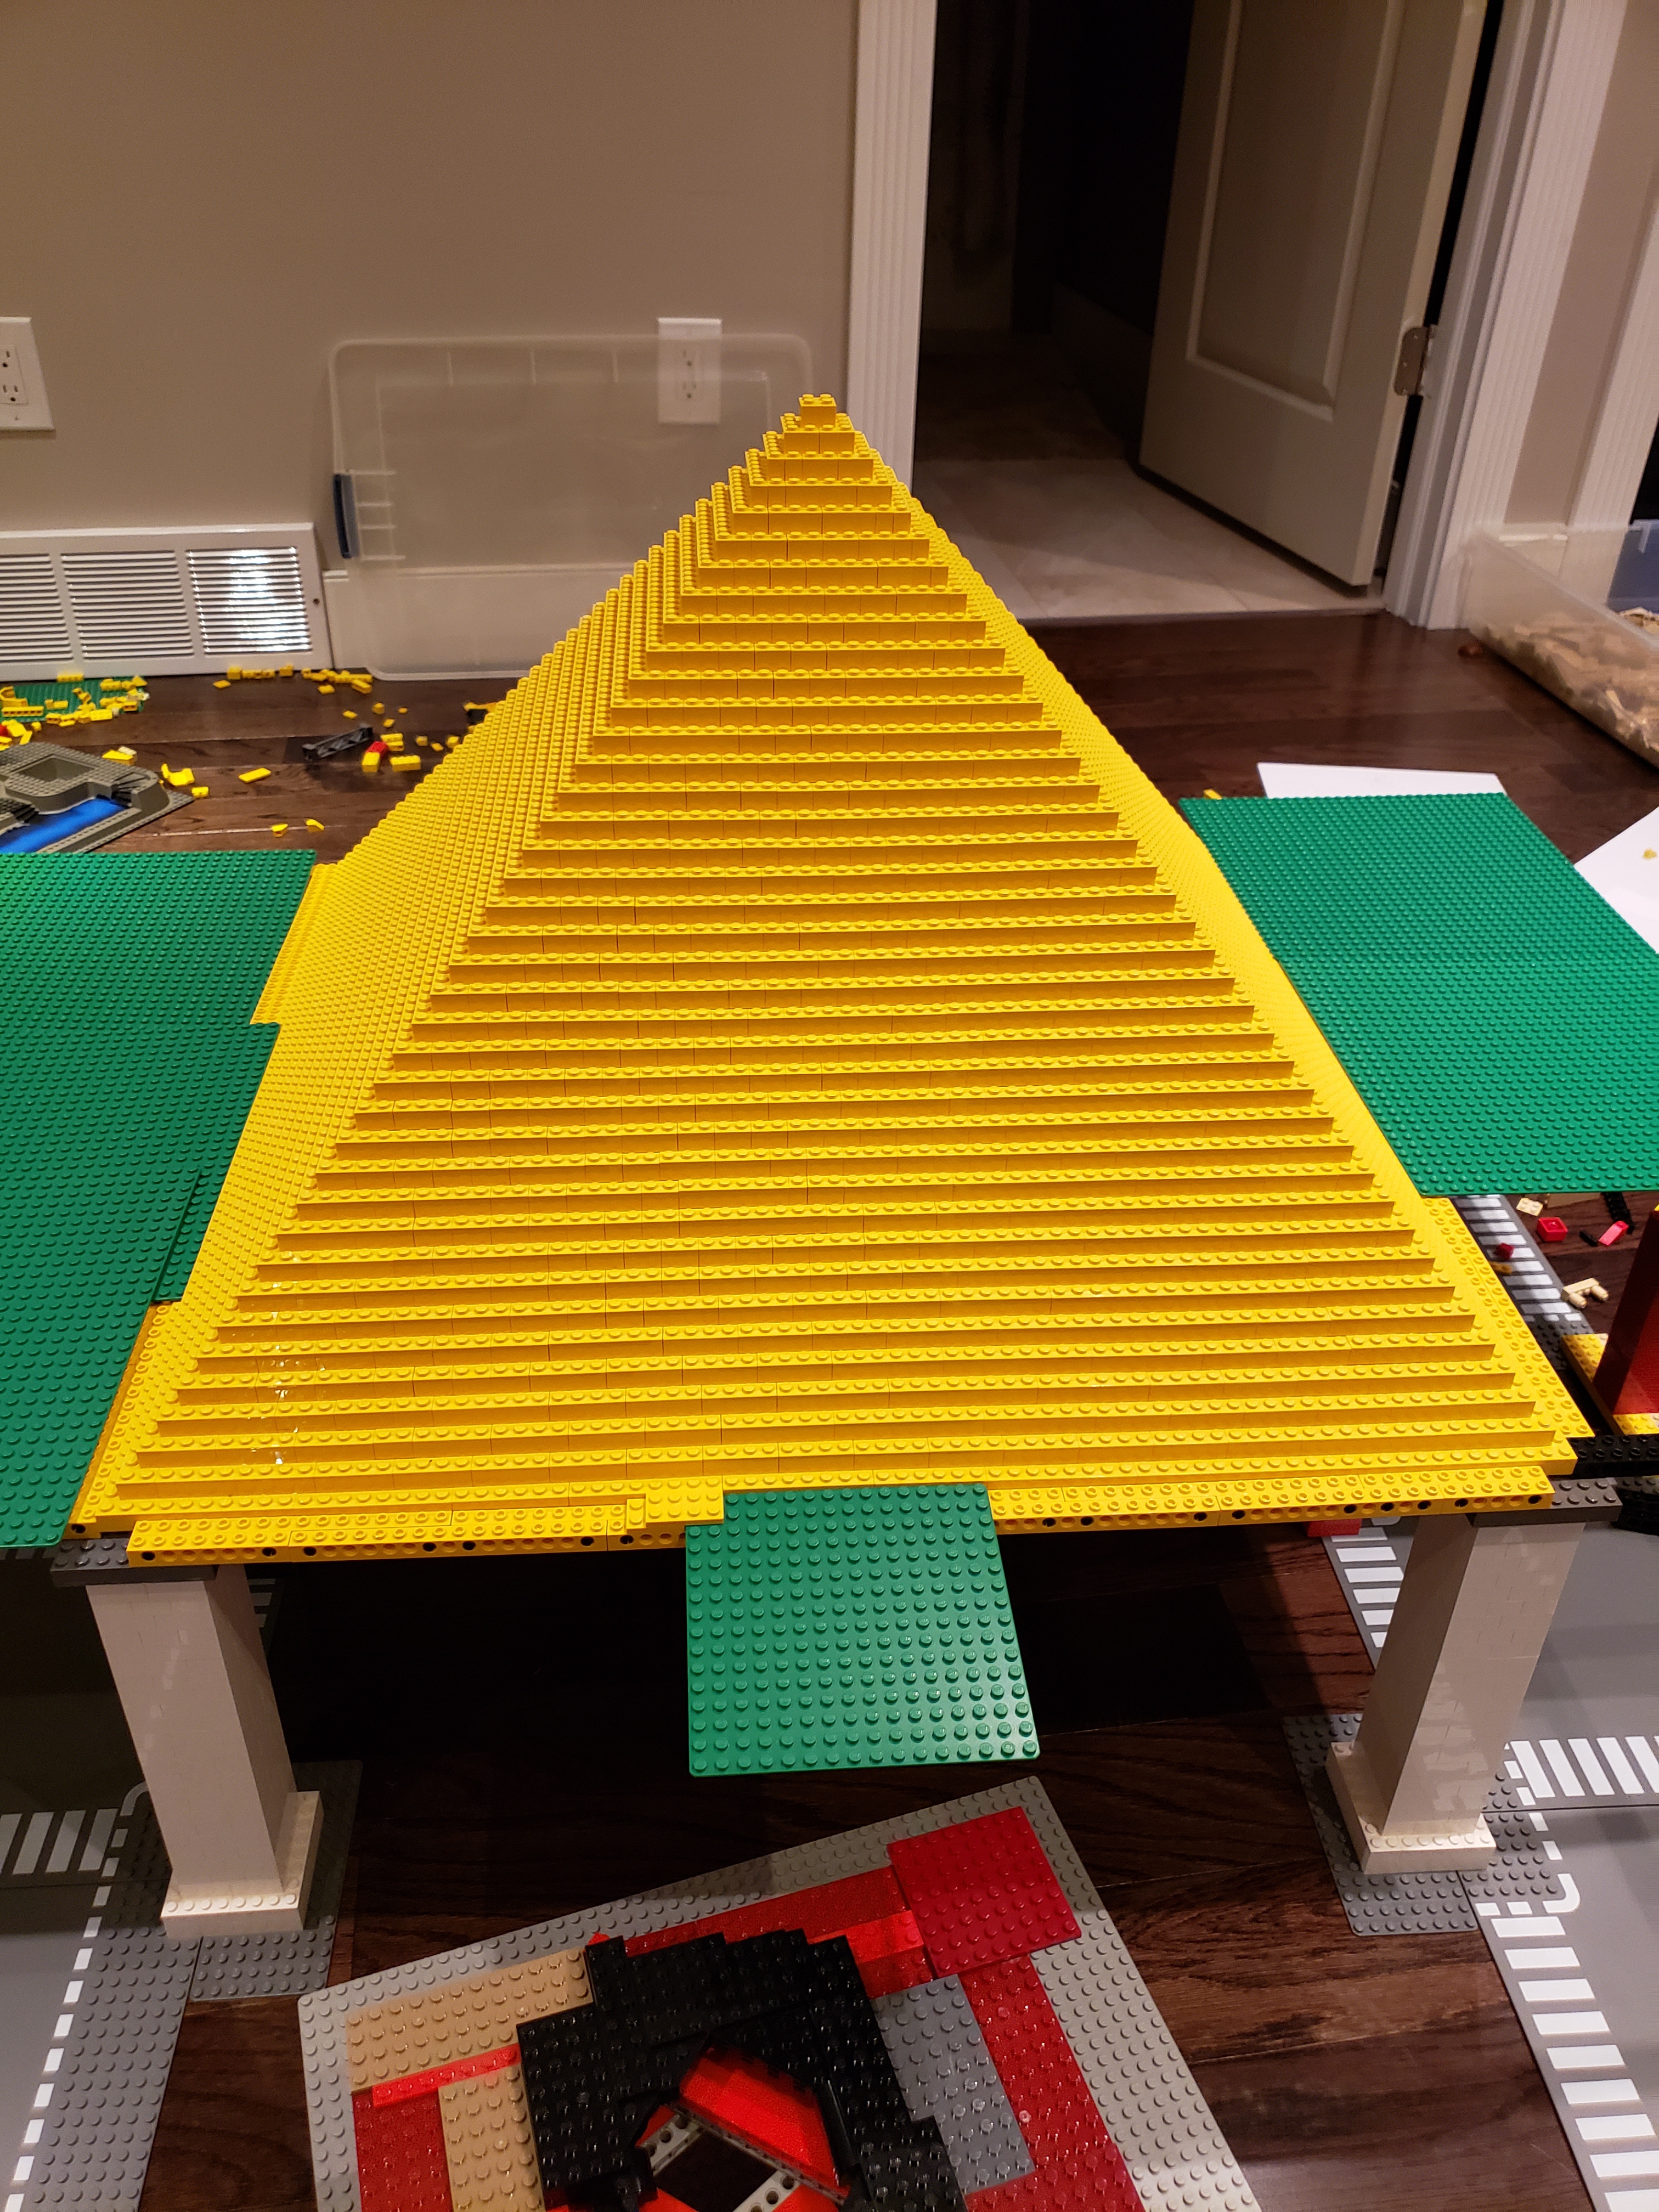 LEGO Pyramid